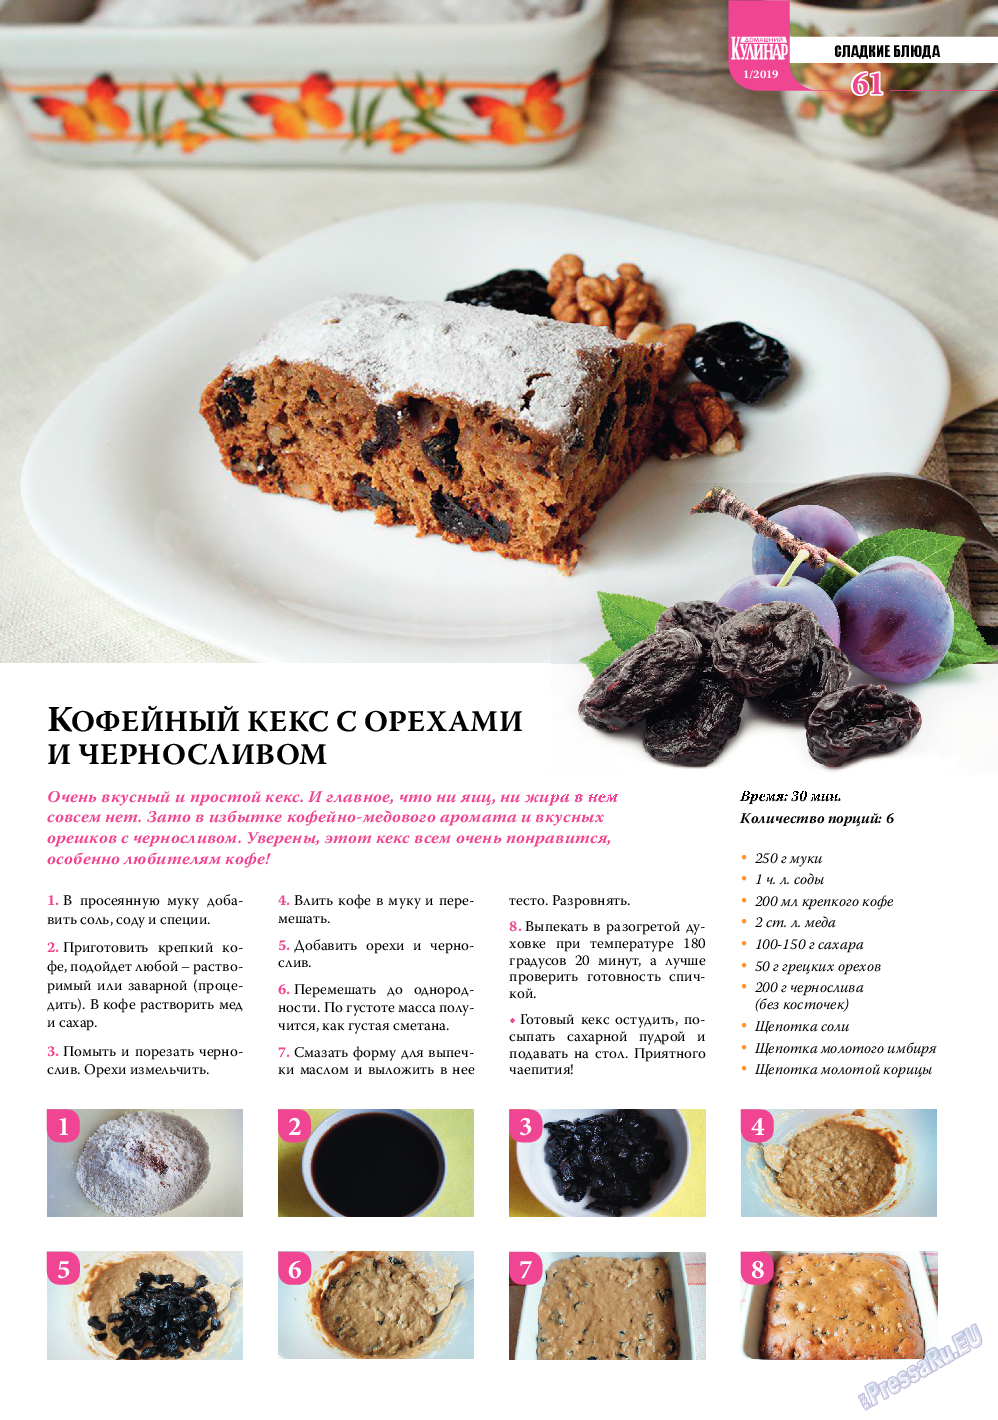 Домашний кулинар, журнал. 2019 №1 стр.61